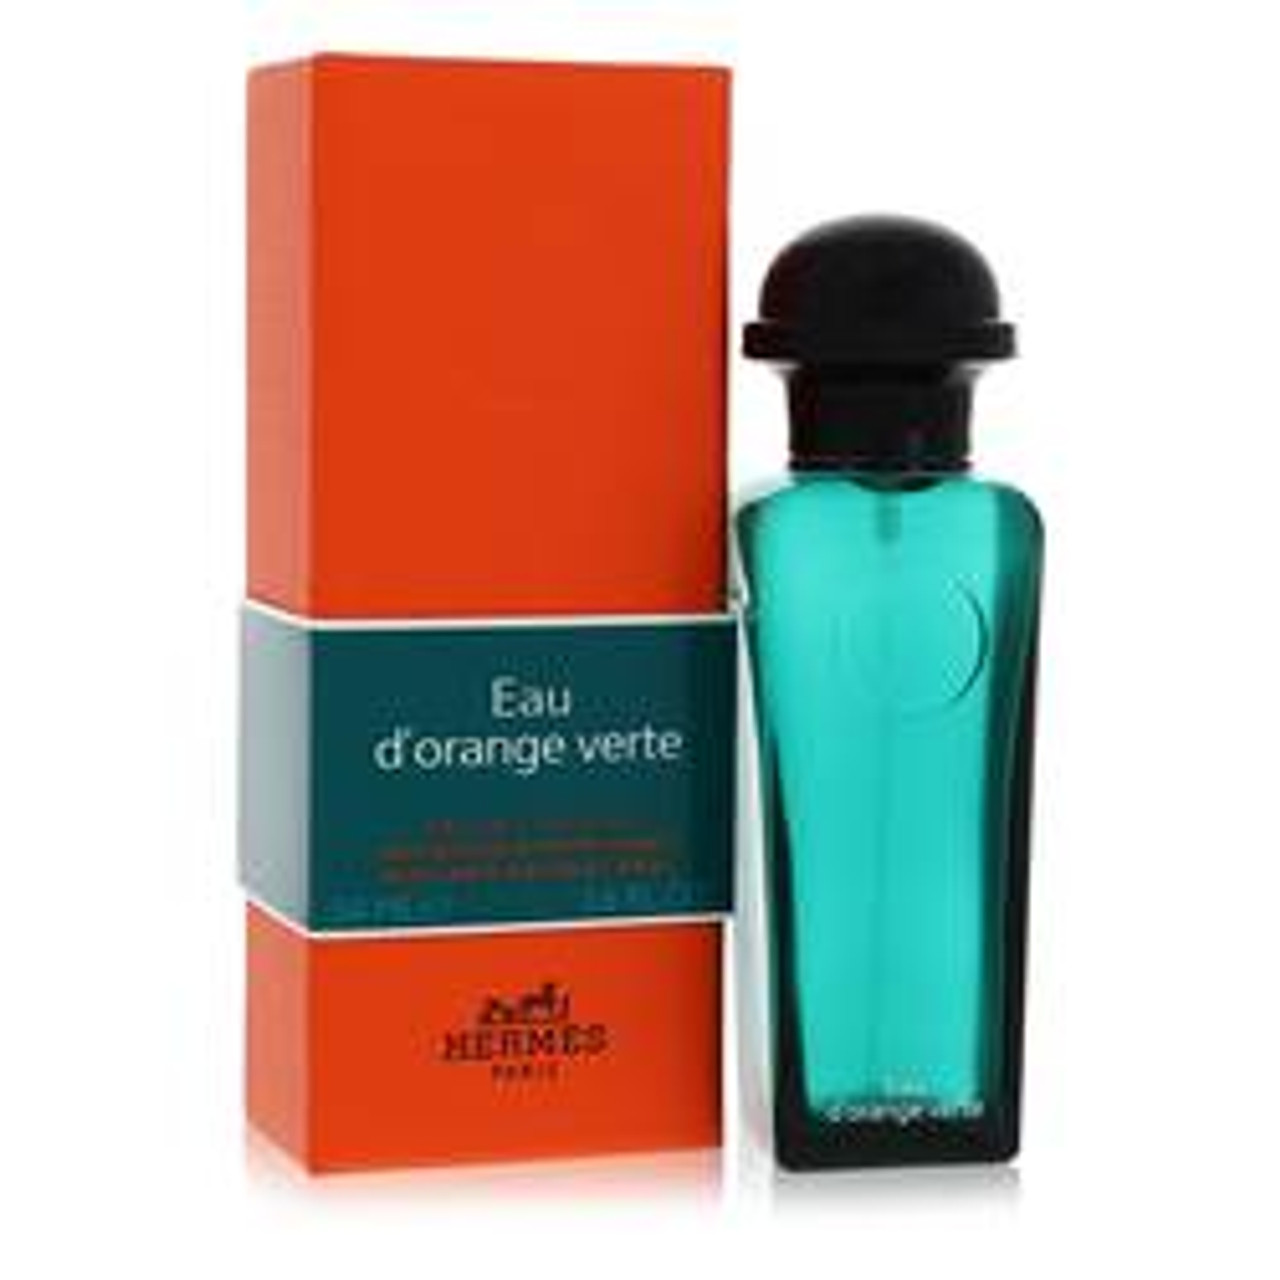 Eau D'orange Verte Cologne By Hermes Eau De Cologne Spray Refillable (Unisex) 1.7 oz for Men - *Pre-Order